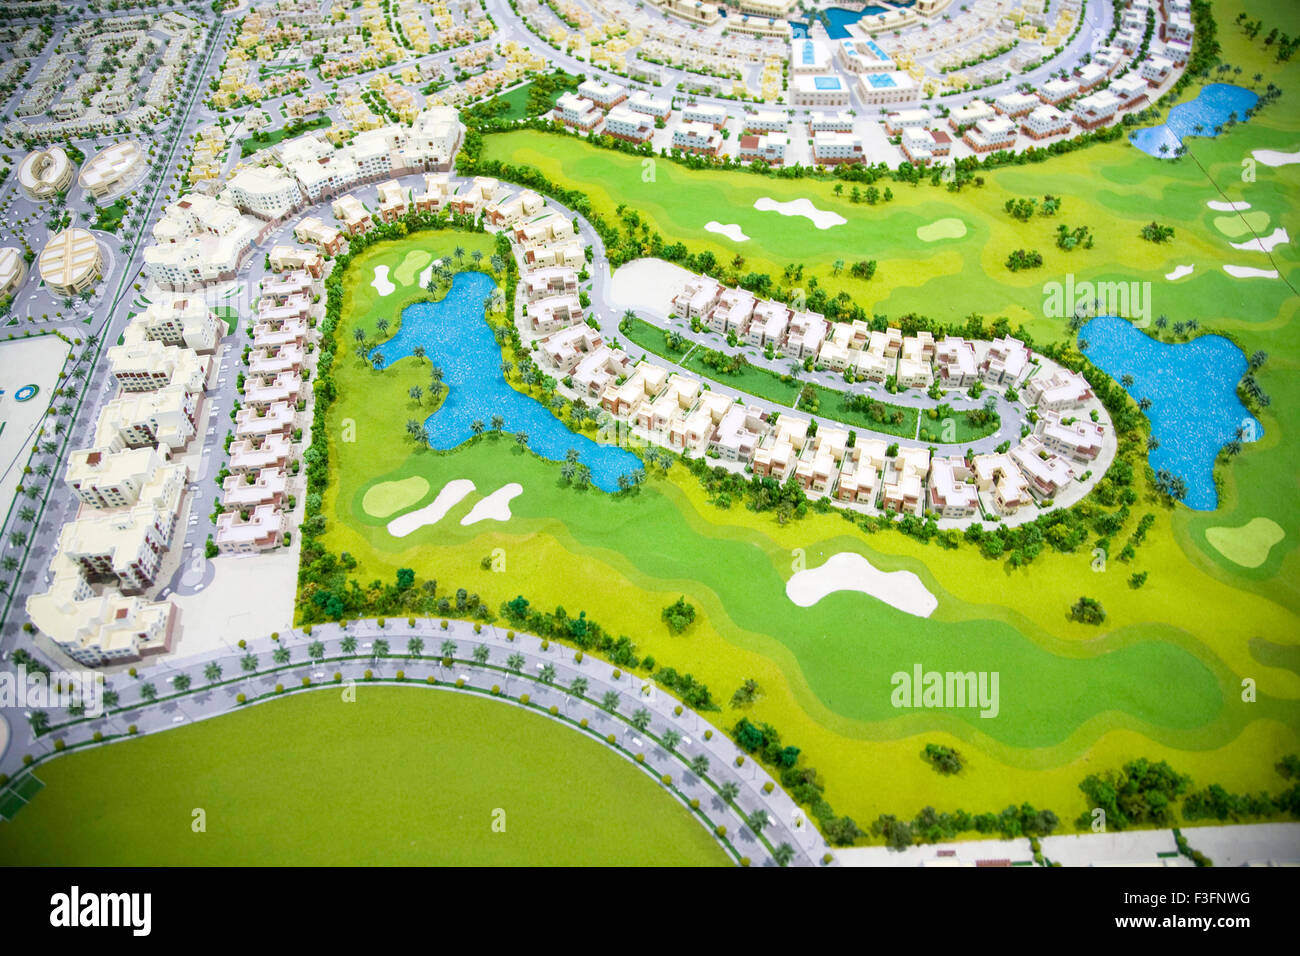 Global Village Dubai property model look comme un modèle graphique Banque D'Images